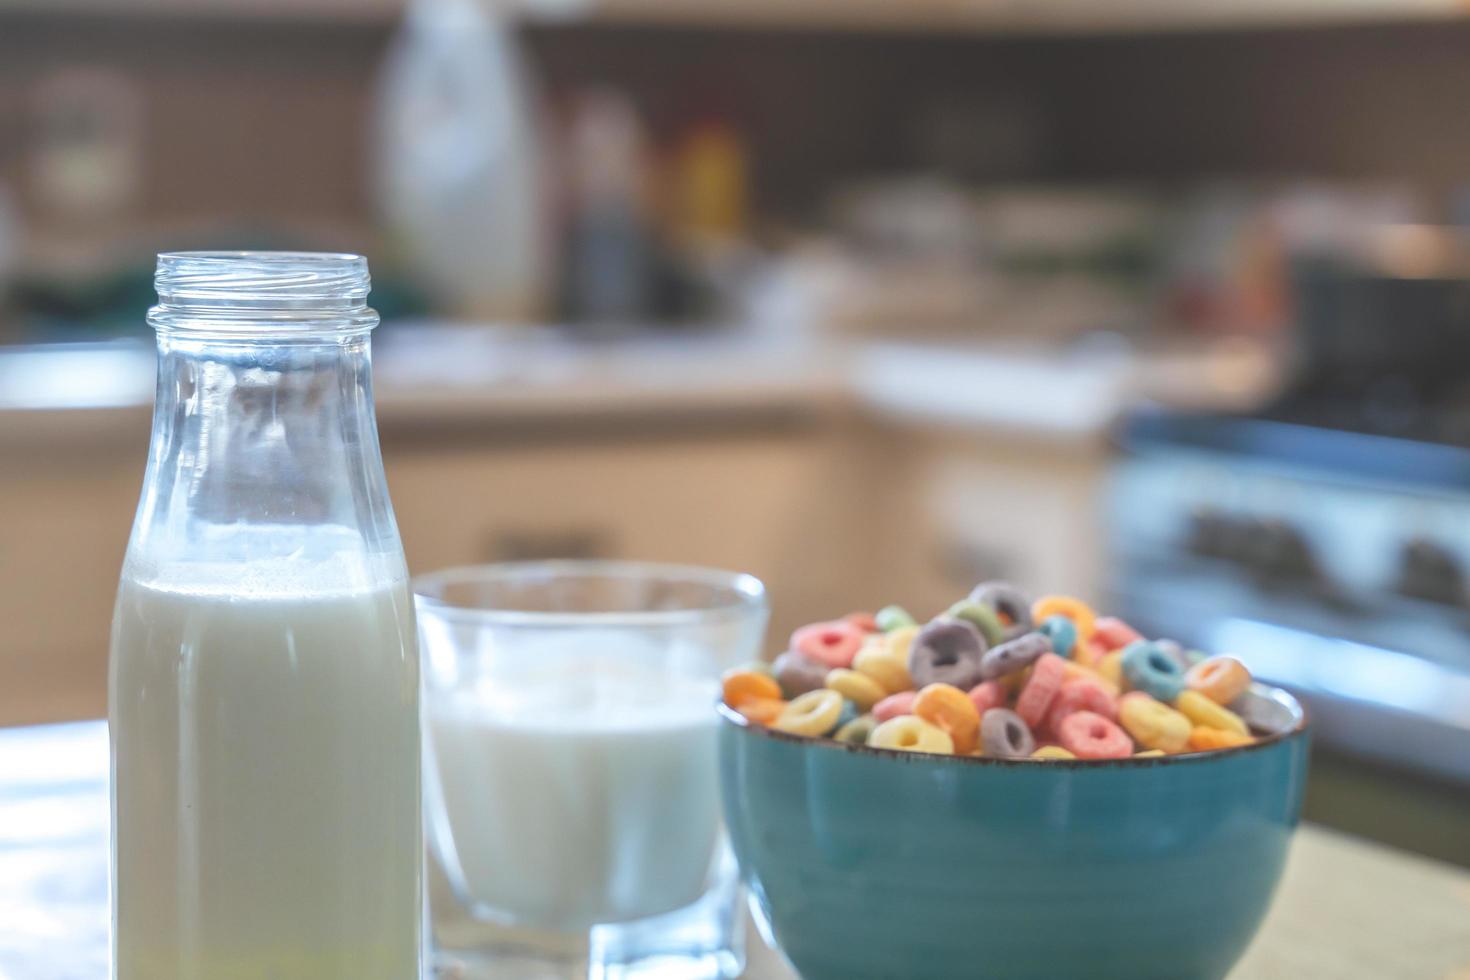 tigela de cereal infantil colorido e leite isolado na mesa de madeira com espaço de texto foto